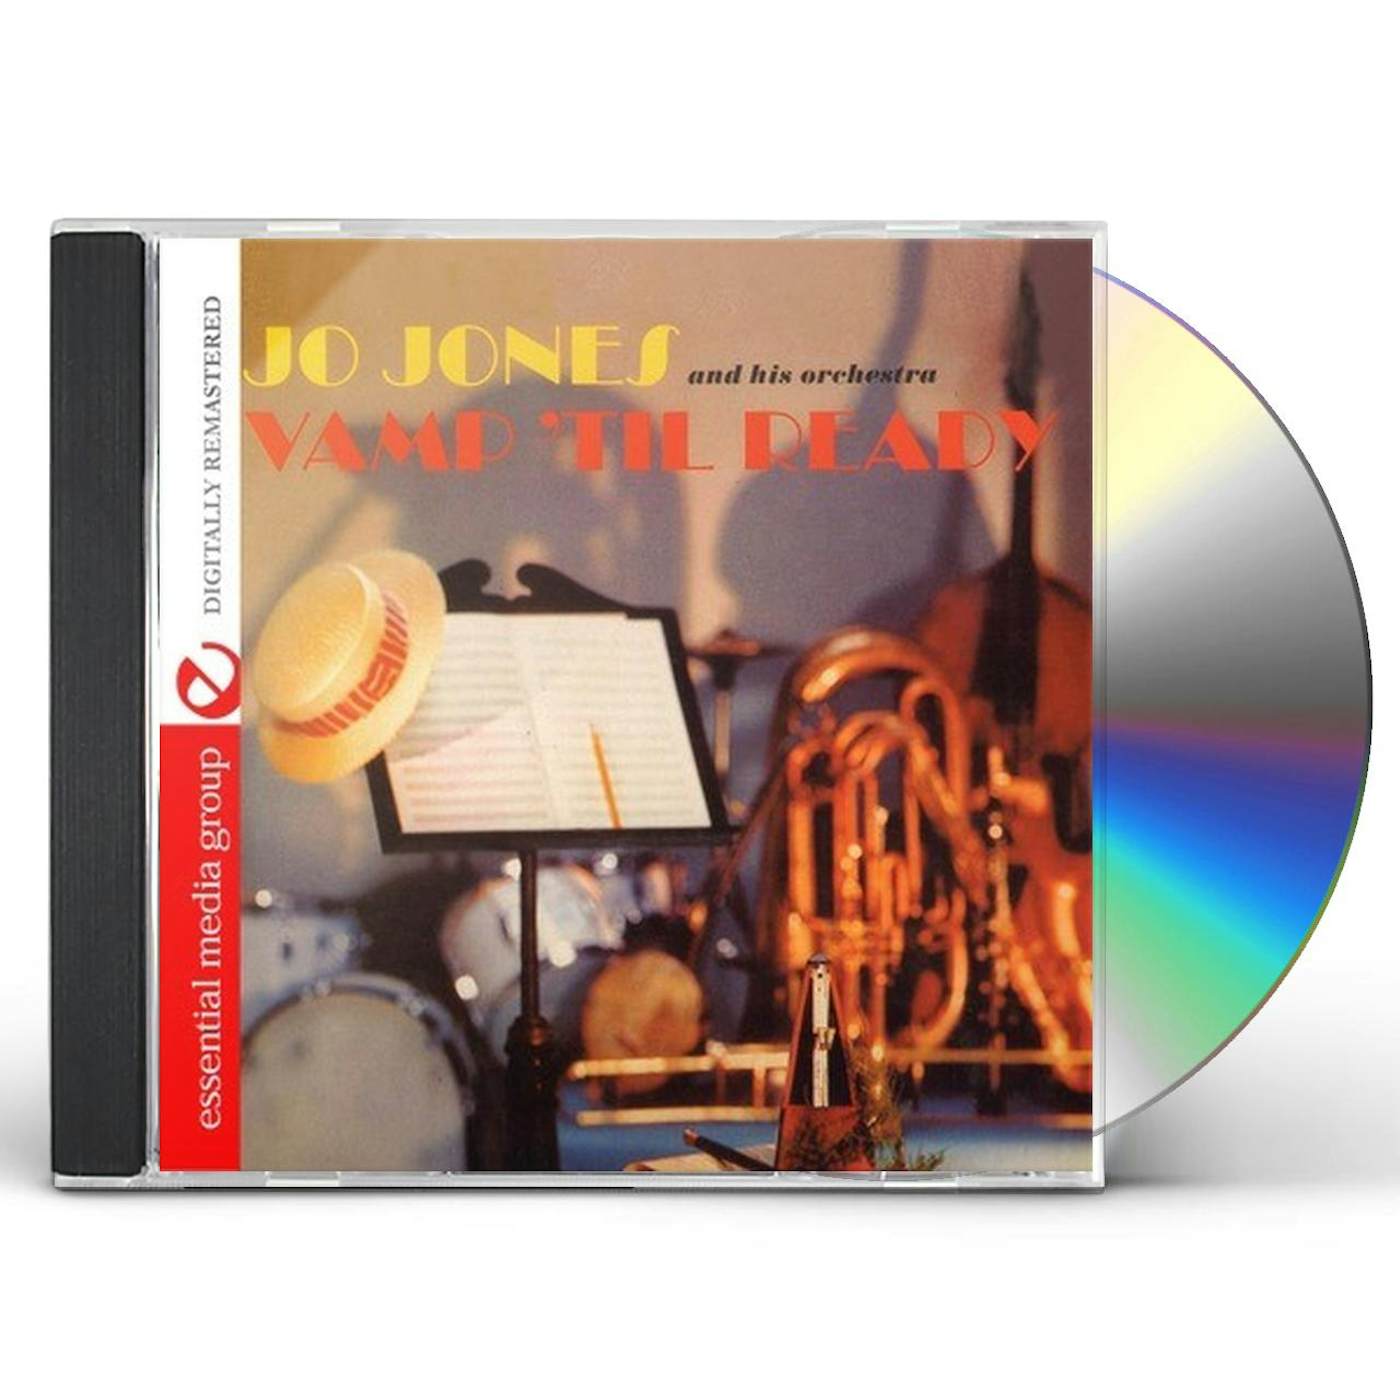 Jo Jones VAMP 'TIL READY CD